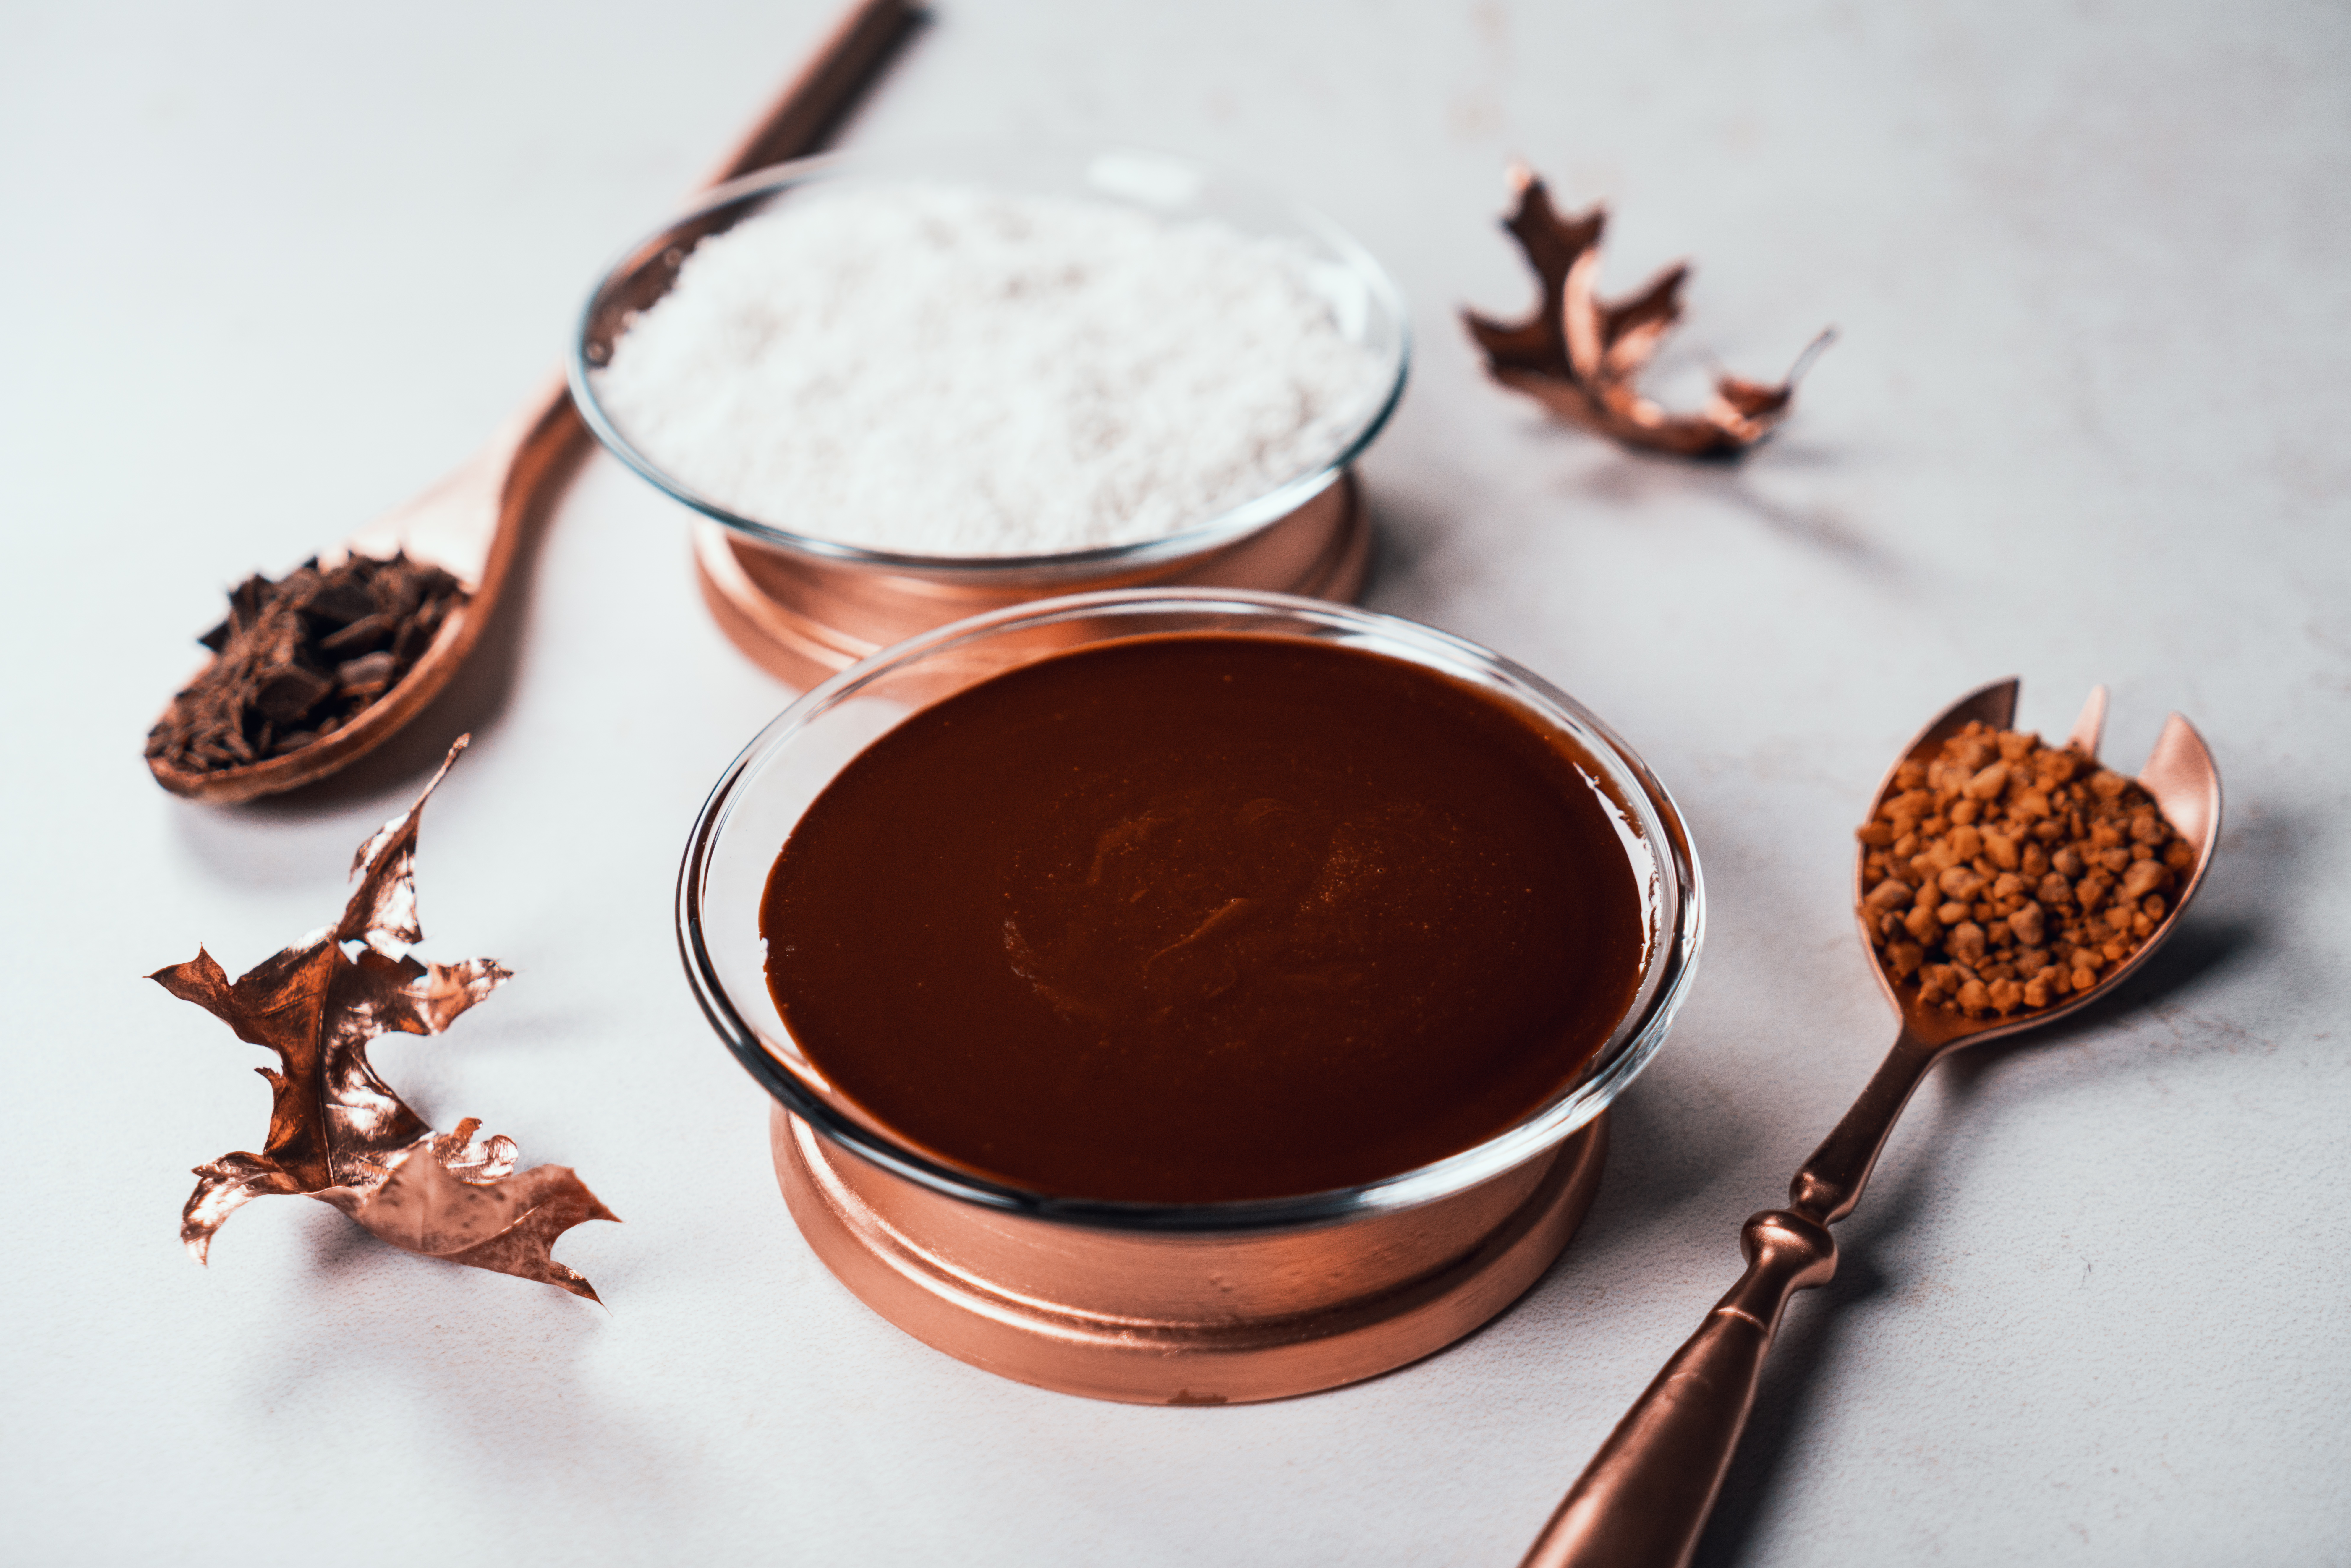 decoración de taza con chocolate derretido y ralladura de coco, recetas faciles y rapidas para hacer en casa en fotos 